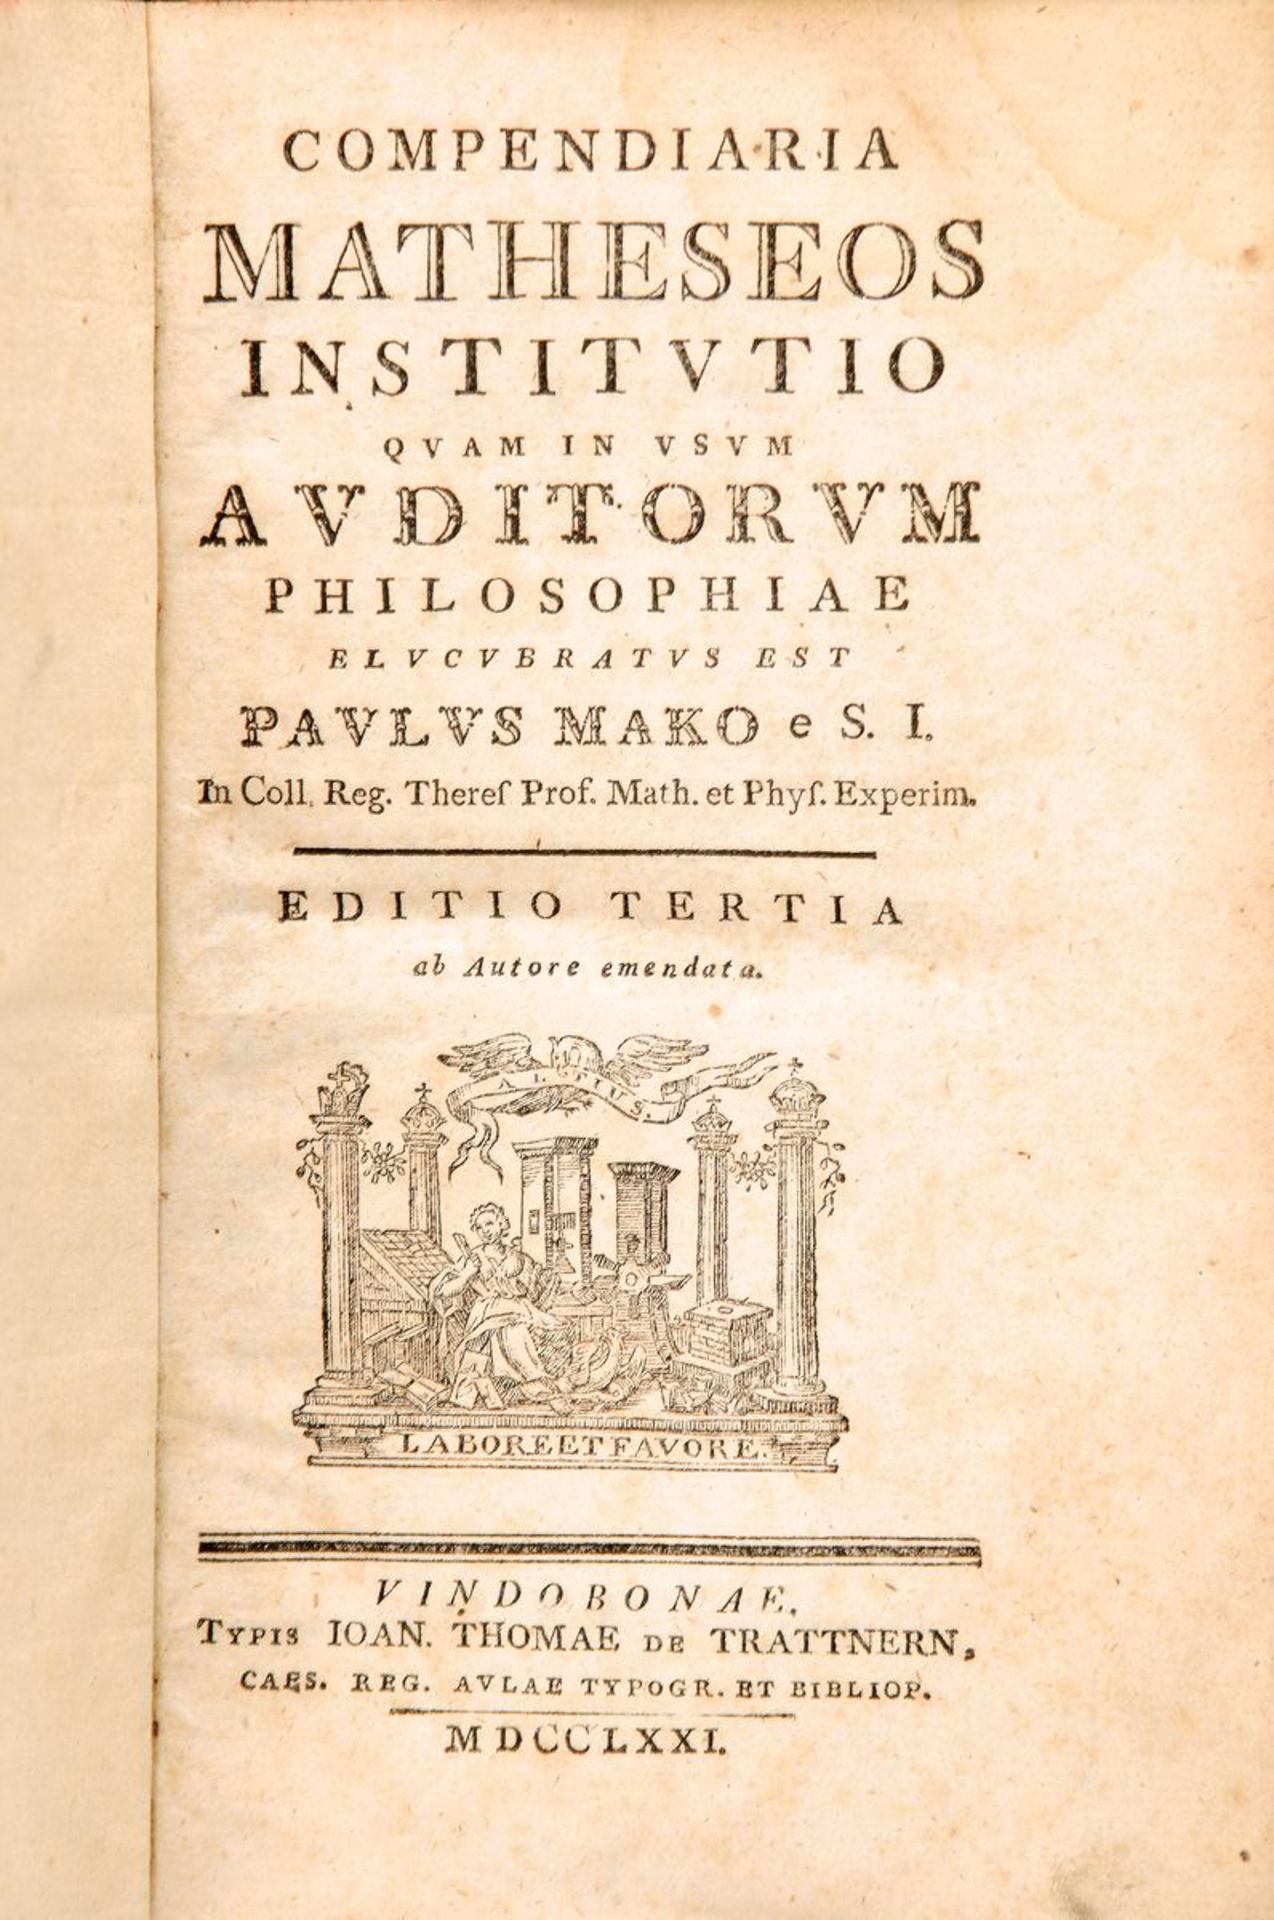 Paul Mako de Kerek Gede: Compendiaria Matheseos institutio quam in usum auditorium philosophiae,